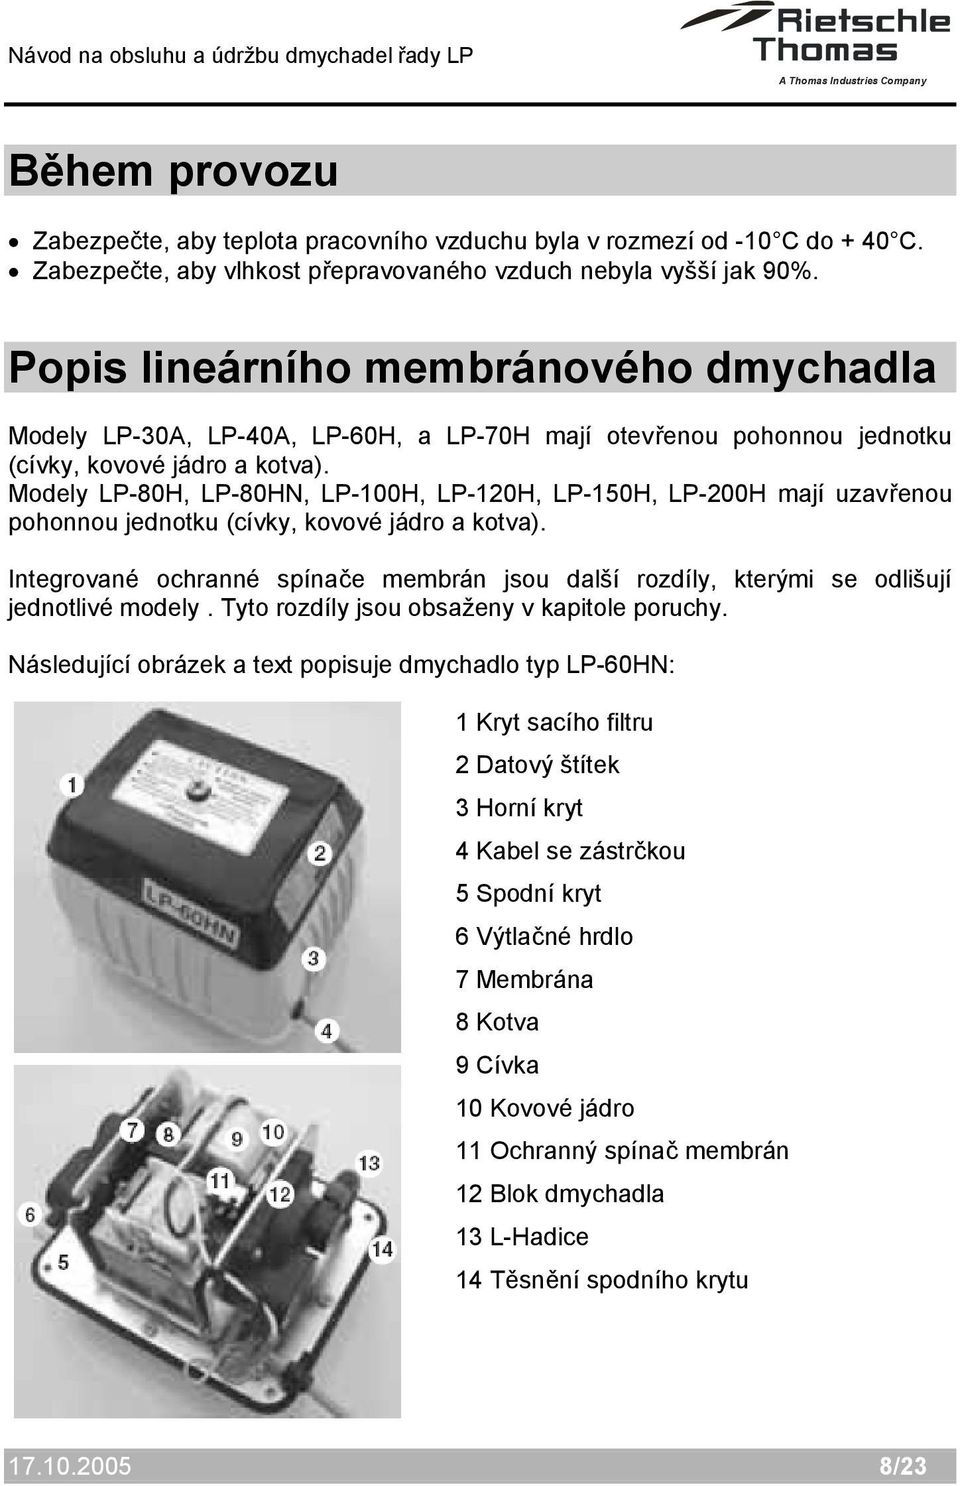 Modely LP-80H, LP-80HN, LP-100H, LP-120H, LP-150H, LP-200H mají uzavřenou pohonnou jednotku (cívky, kovové jádro a kotva).